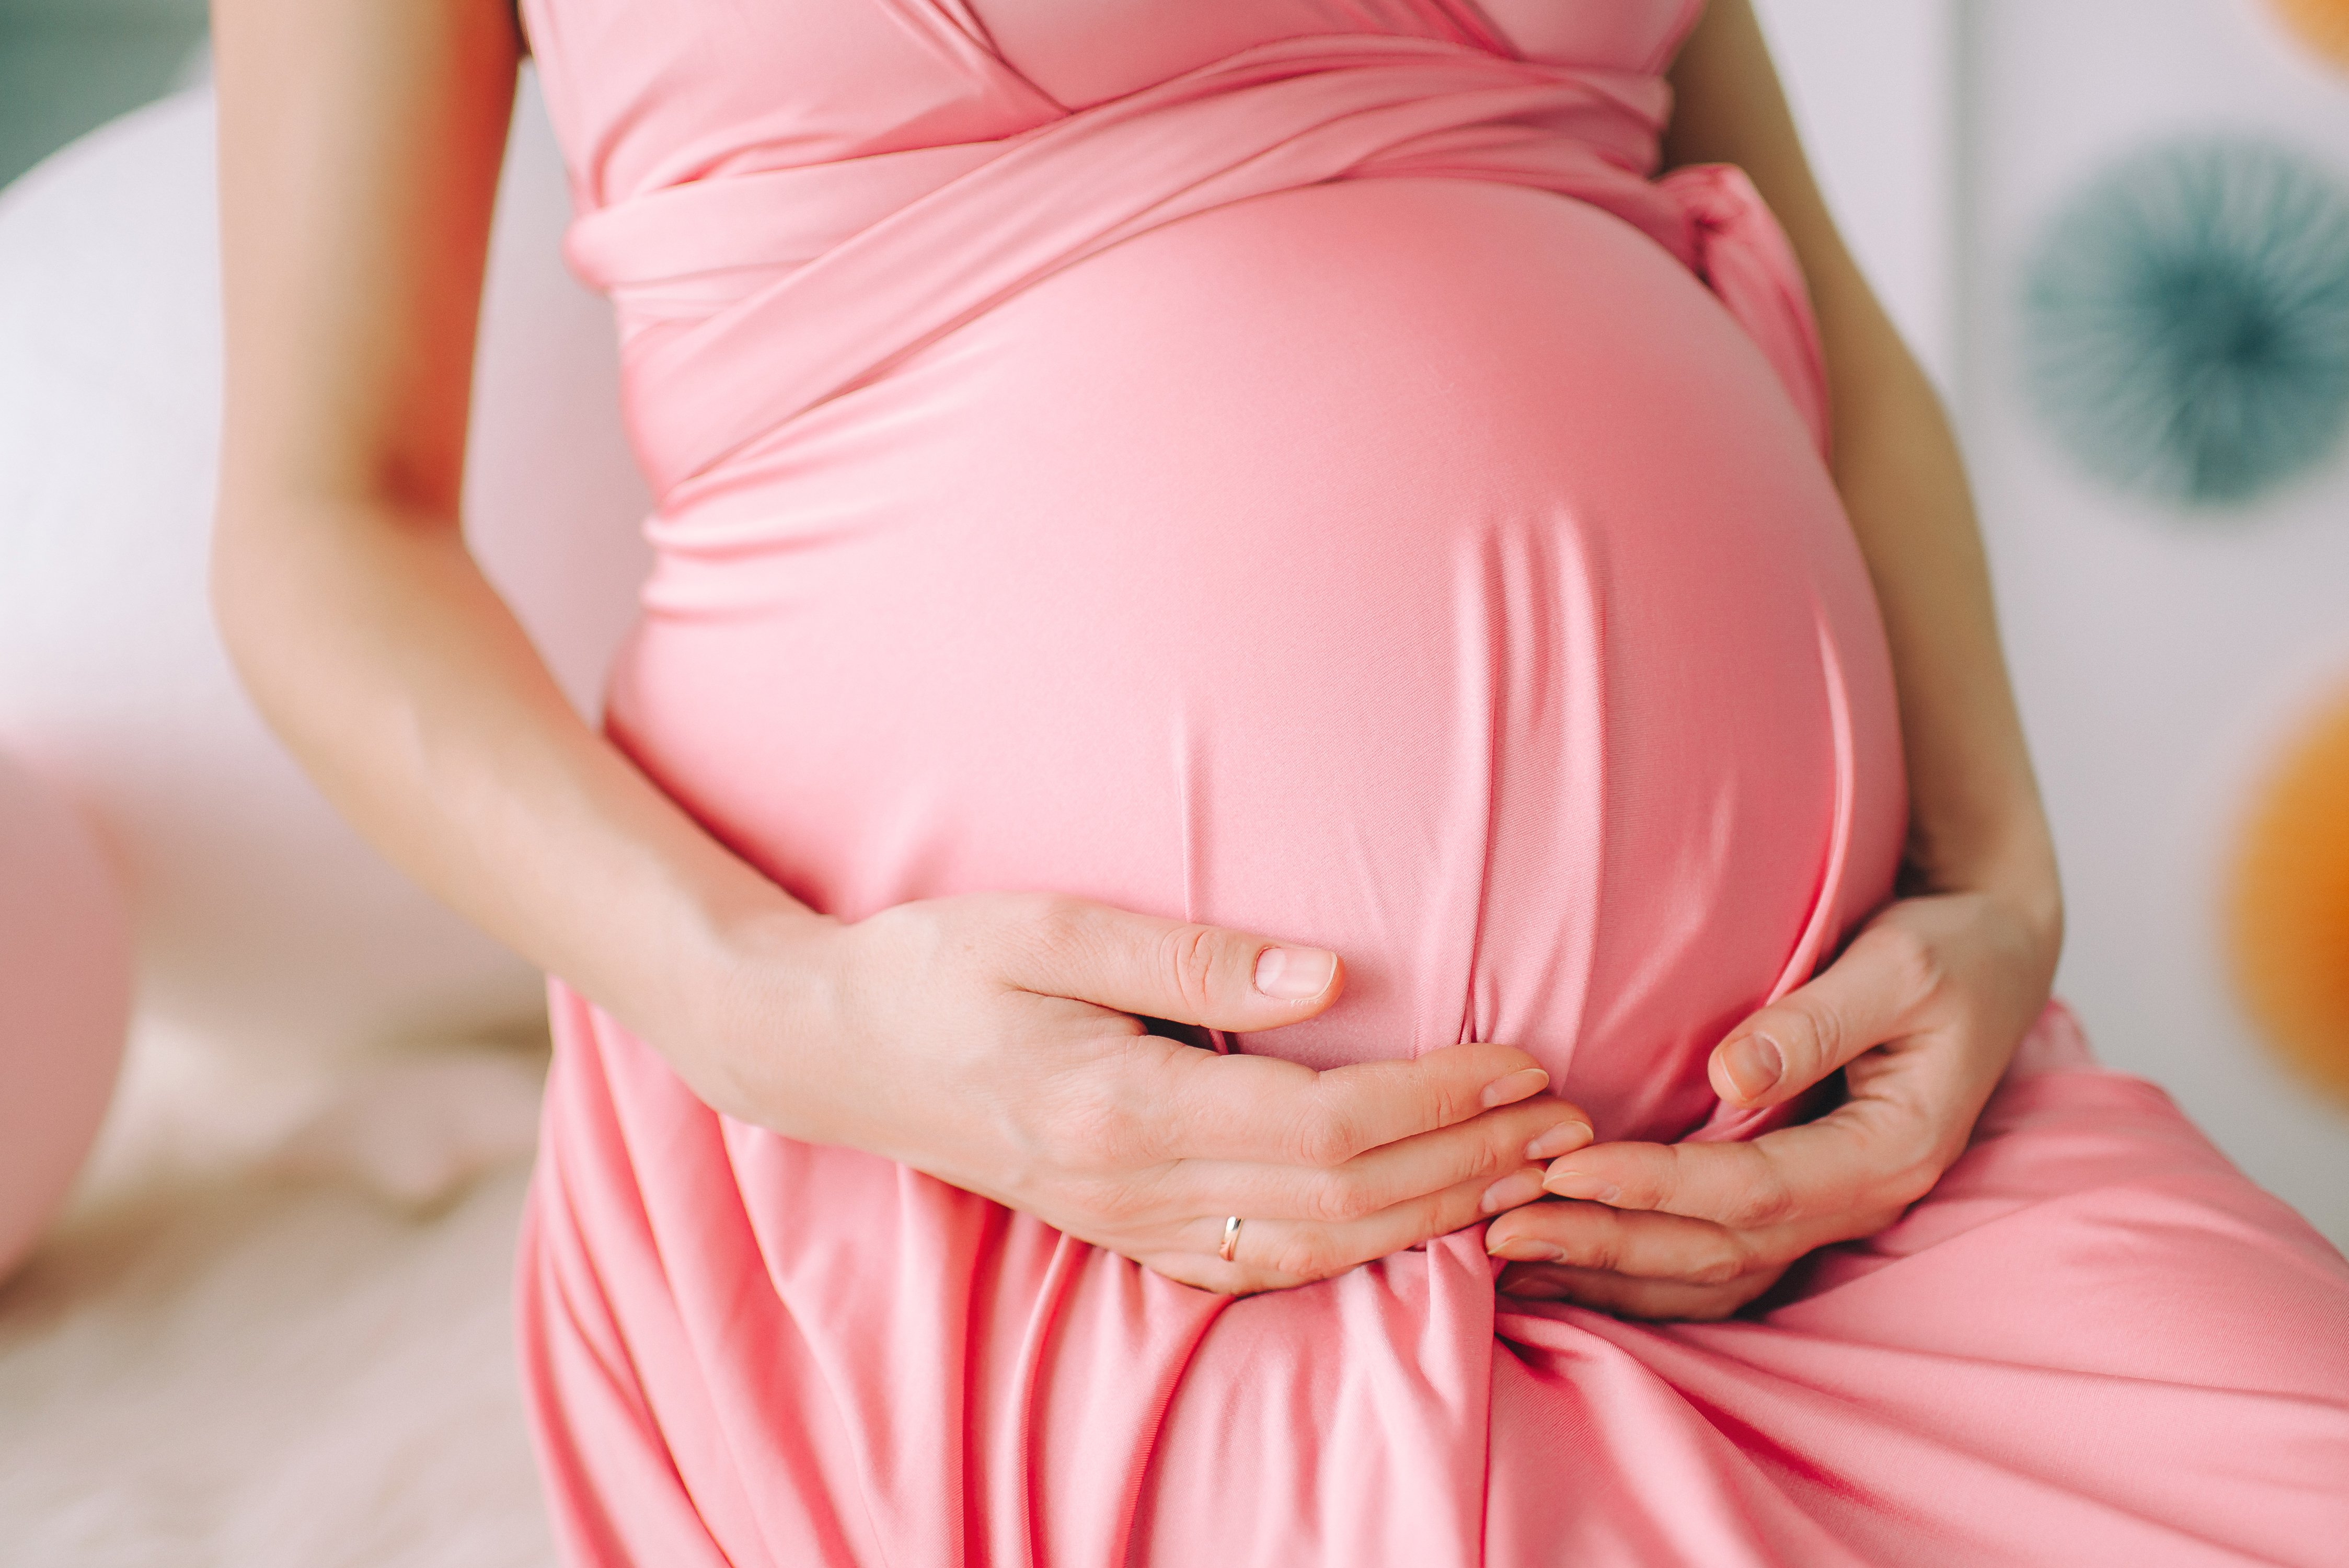 Schwangere Frau mit Babybauch | Quelle: Shutterstock